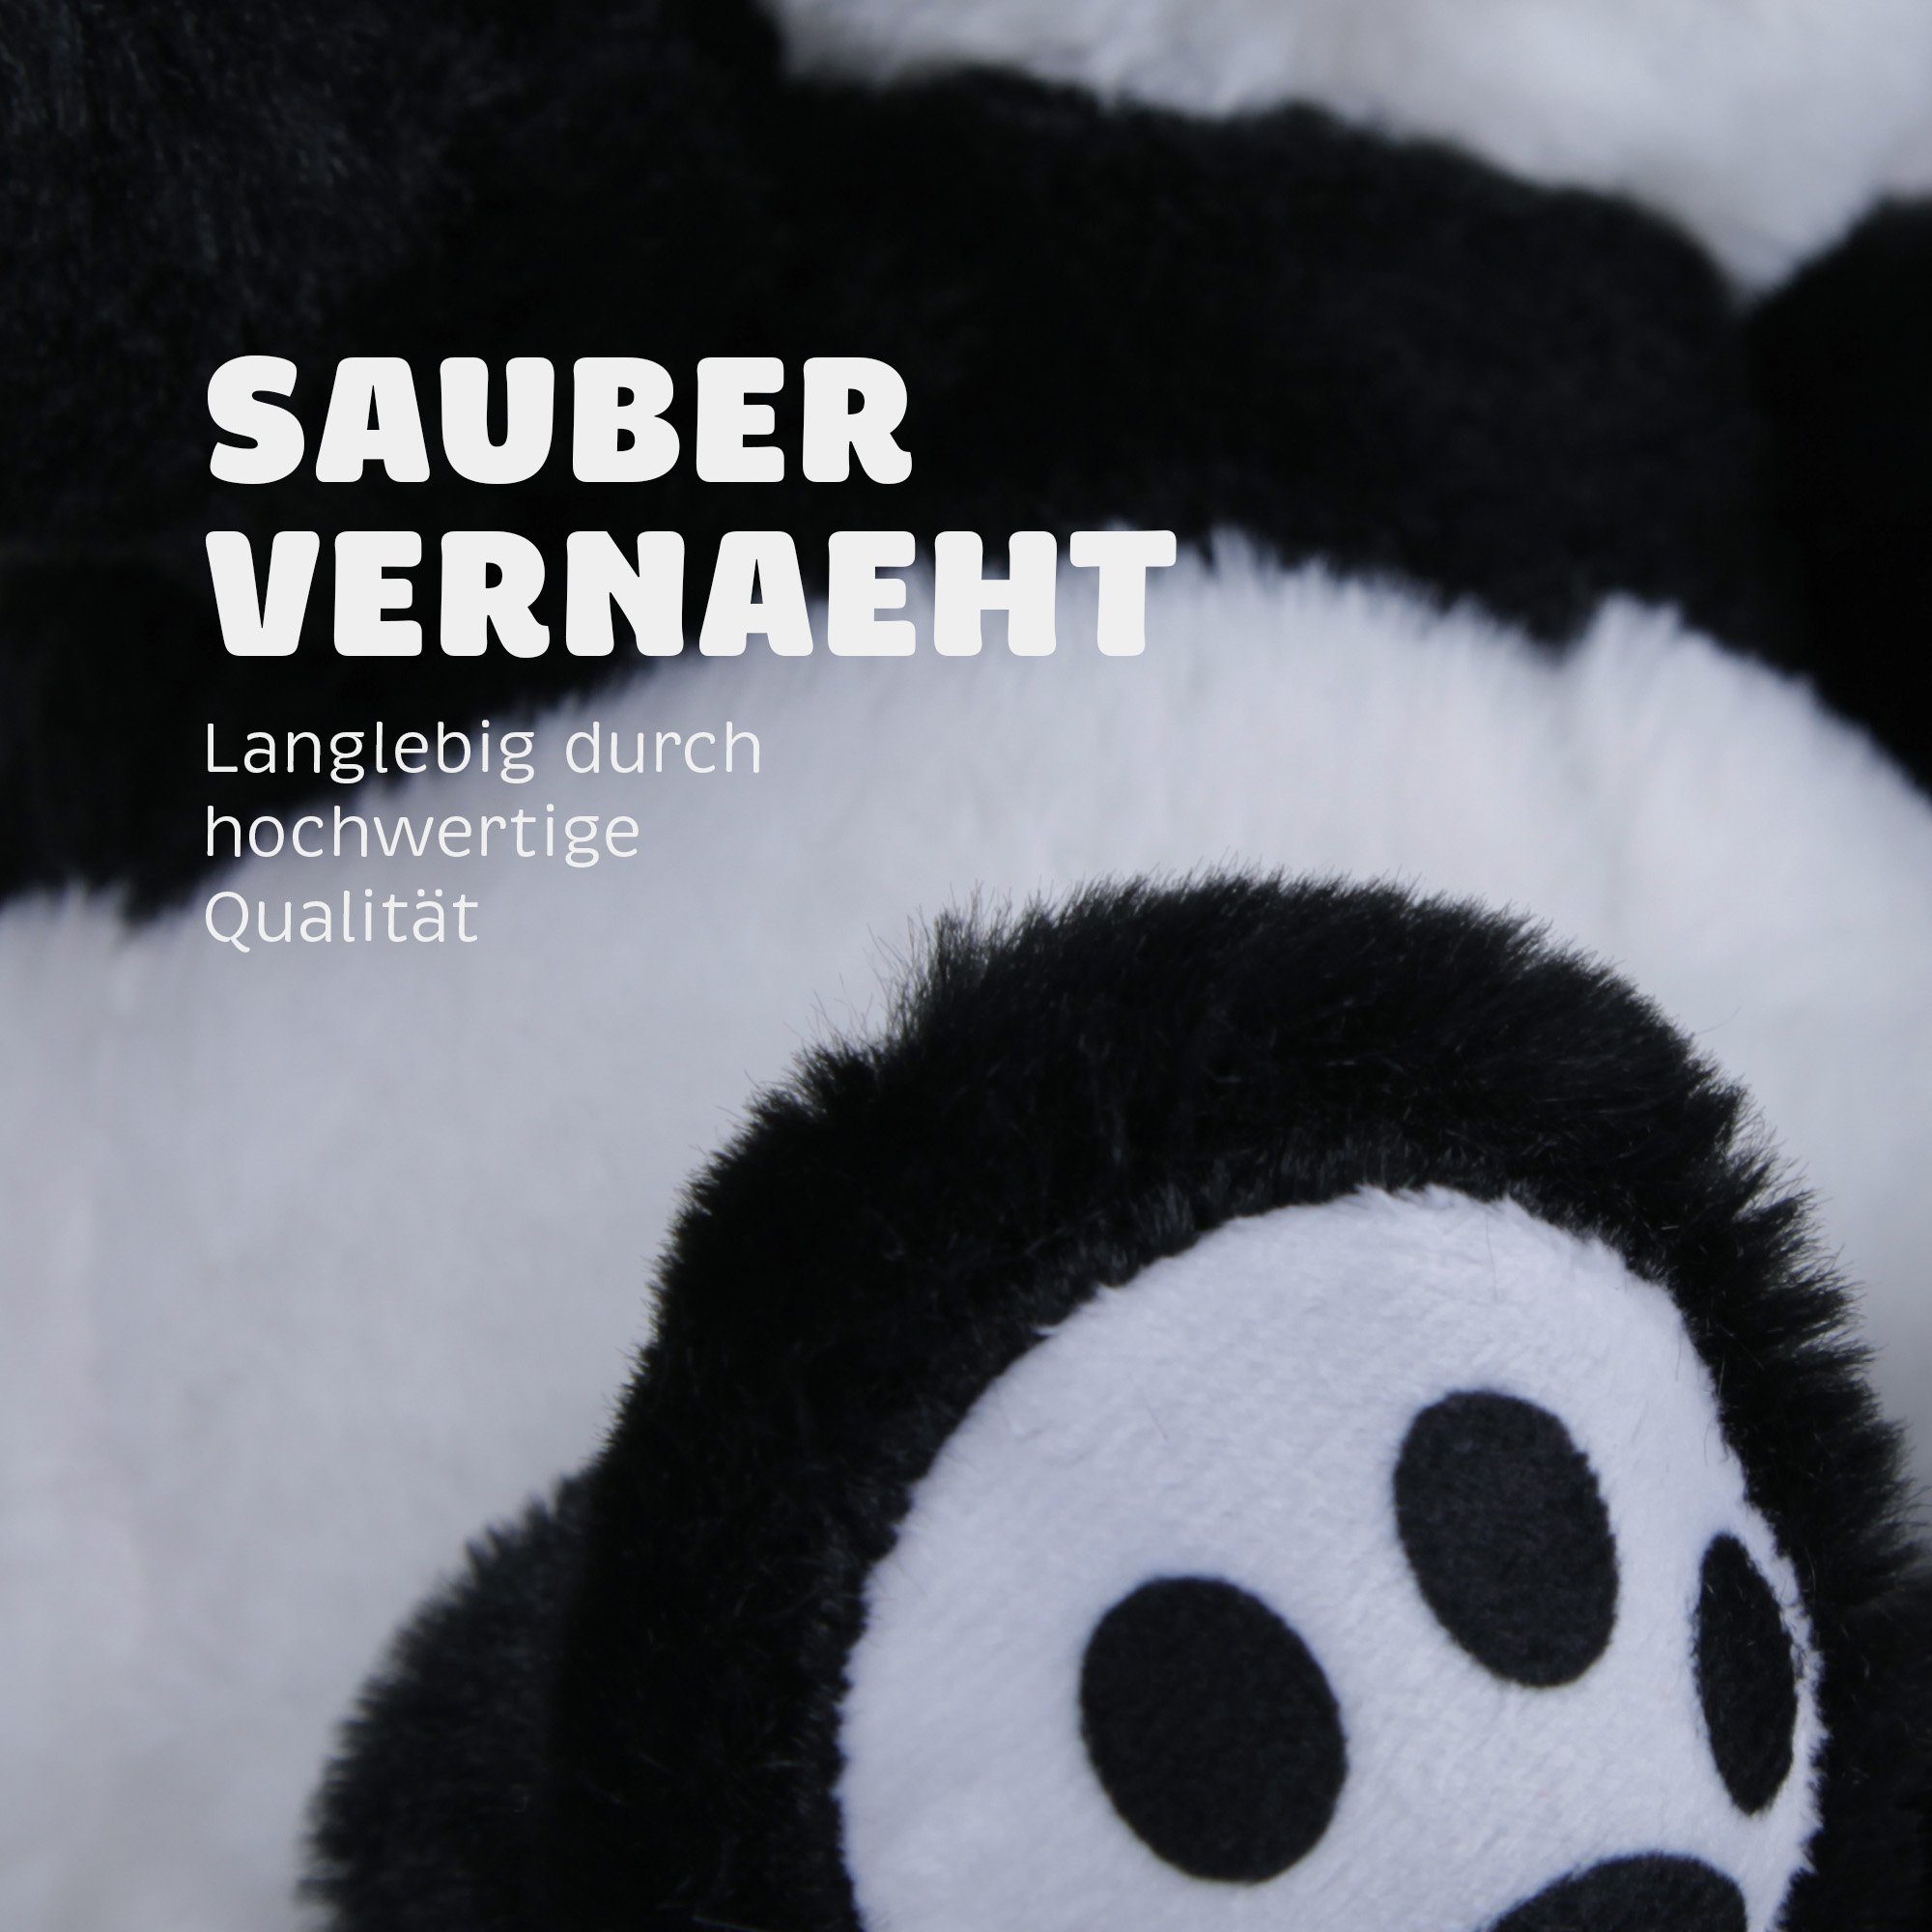 Bestlivings Kuscheltier Stofftier Plüschtier 100% - - Panda), Nachhaltig Umweltfreundlich recyceltes (Pao Material Helden